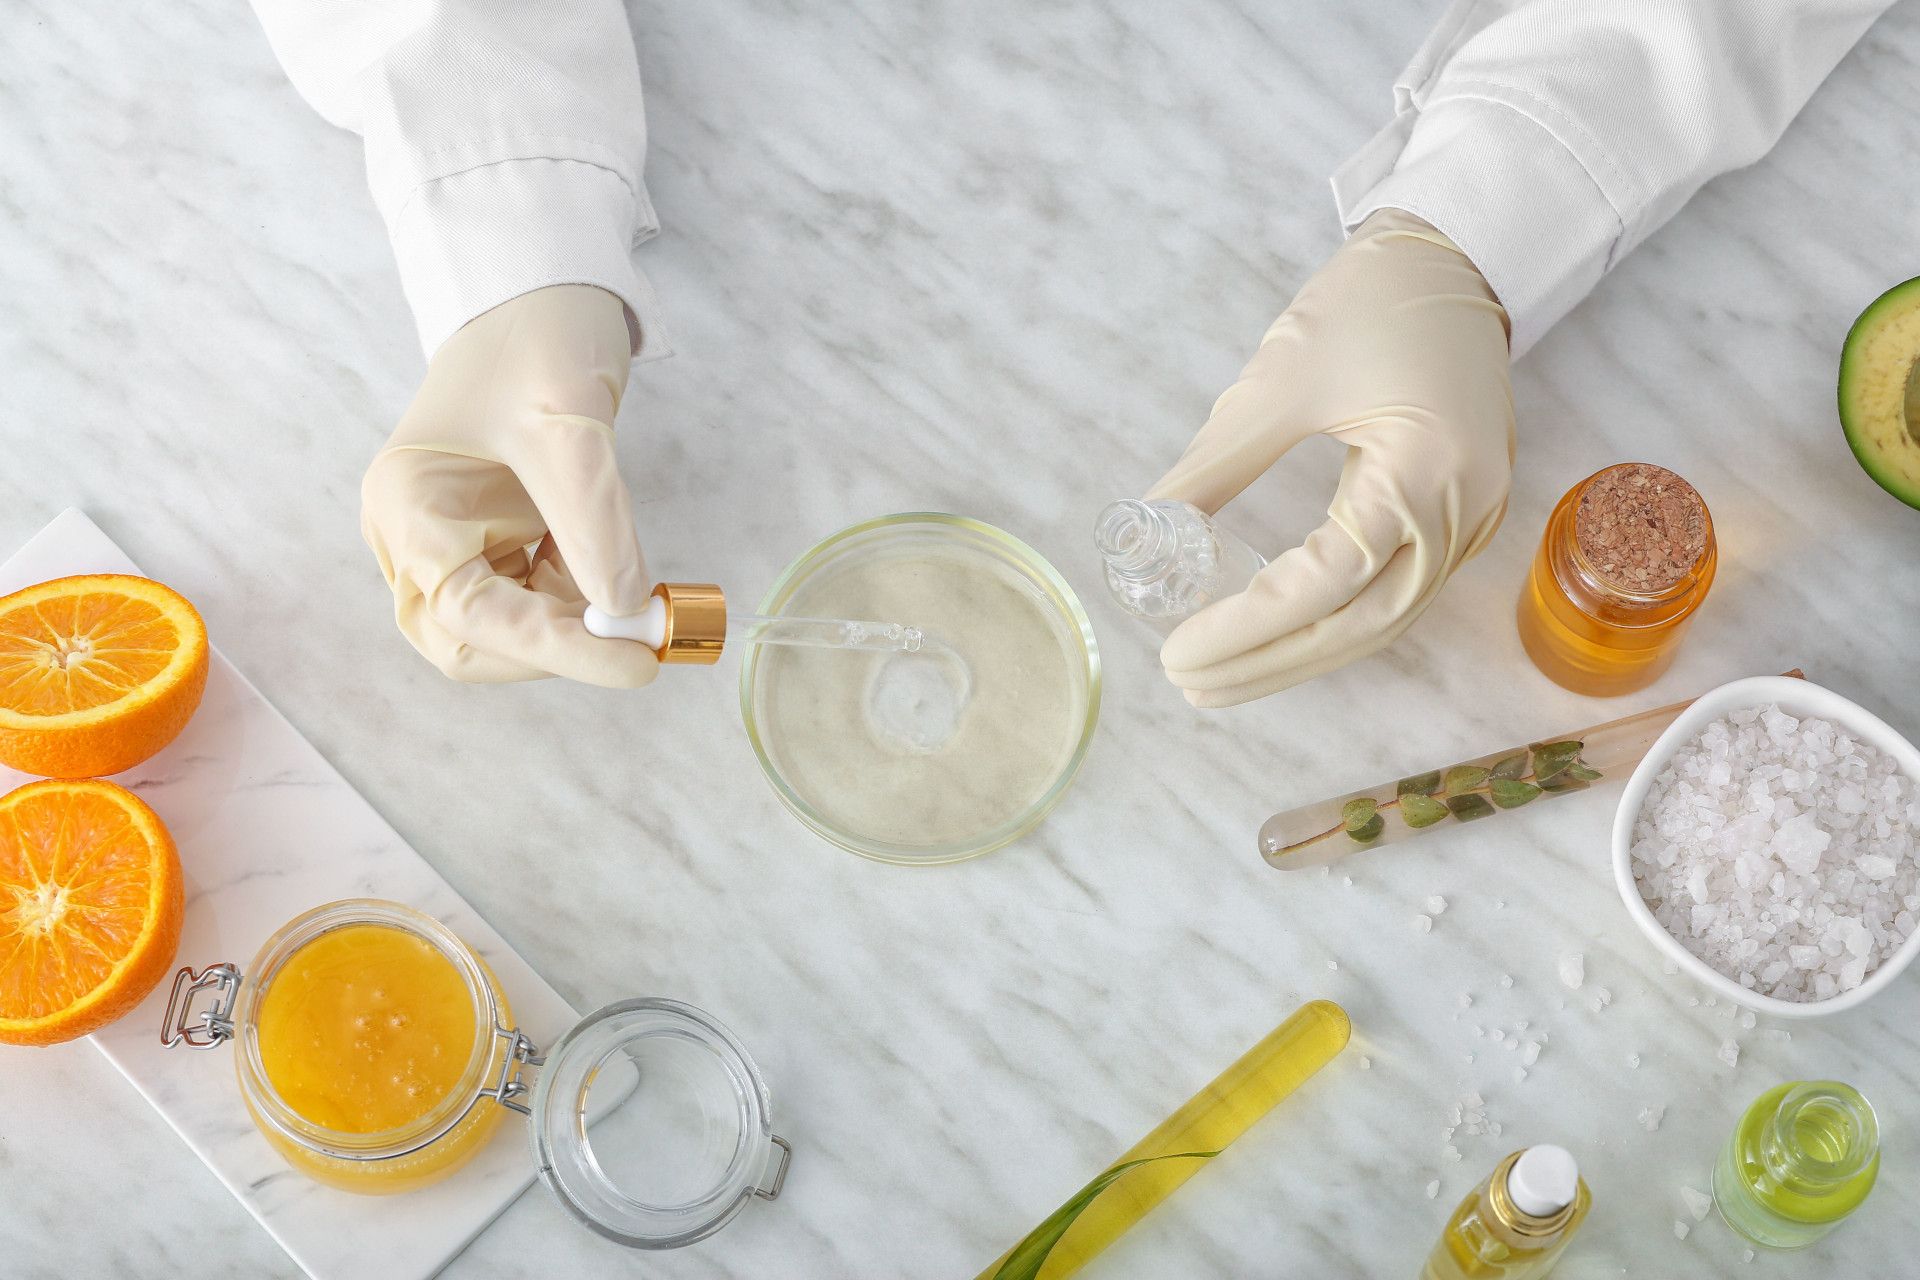 mani del tecnico di laboratorio durante la preparazione dei cosmetici Ayame con prodotti naturali sul tavolo di marmo con arance e spezie